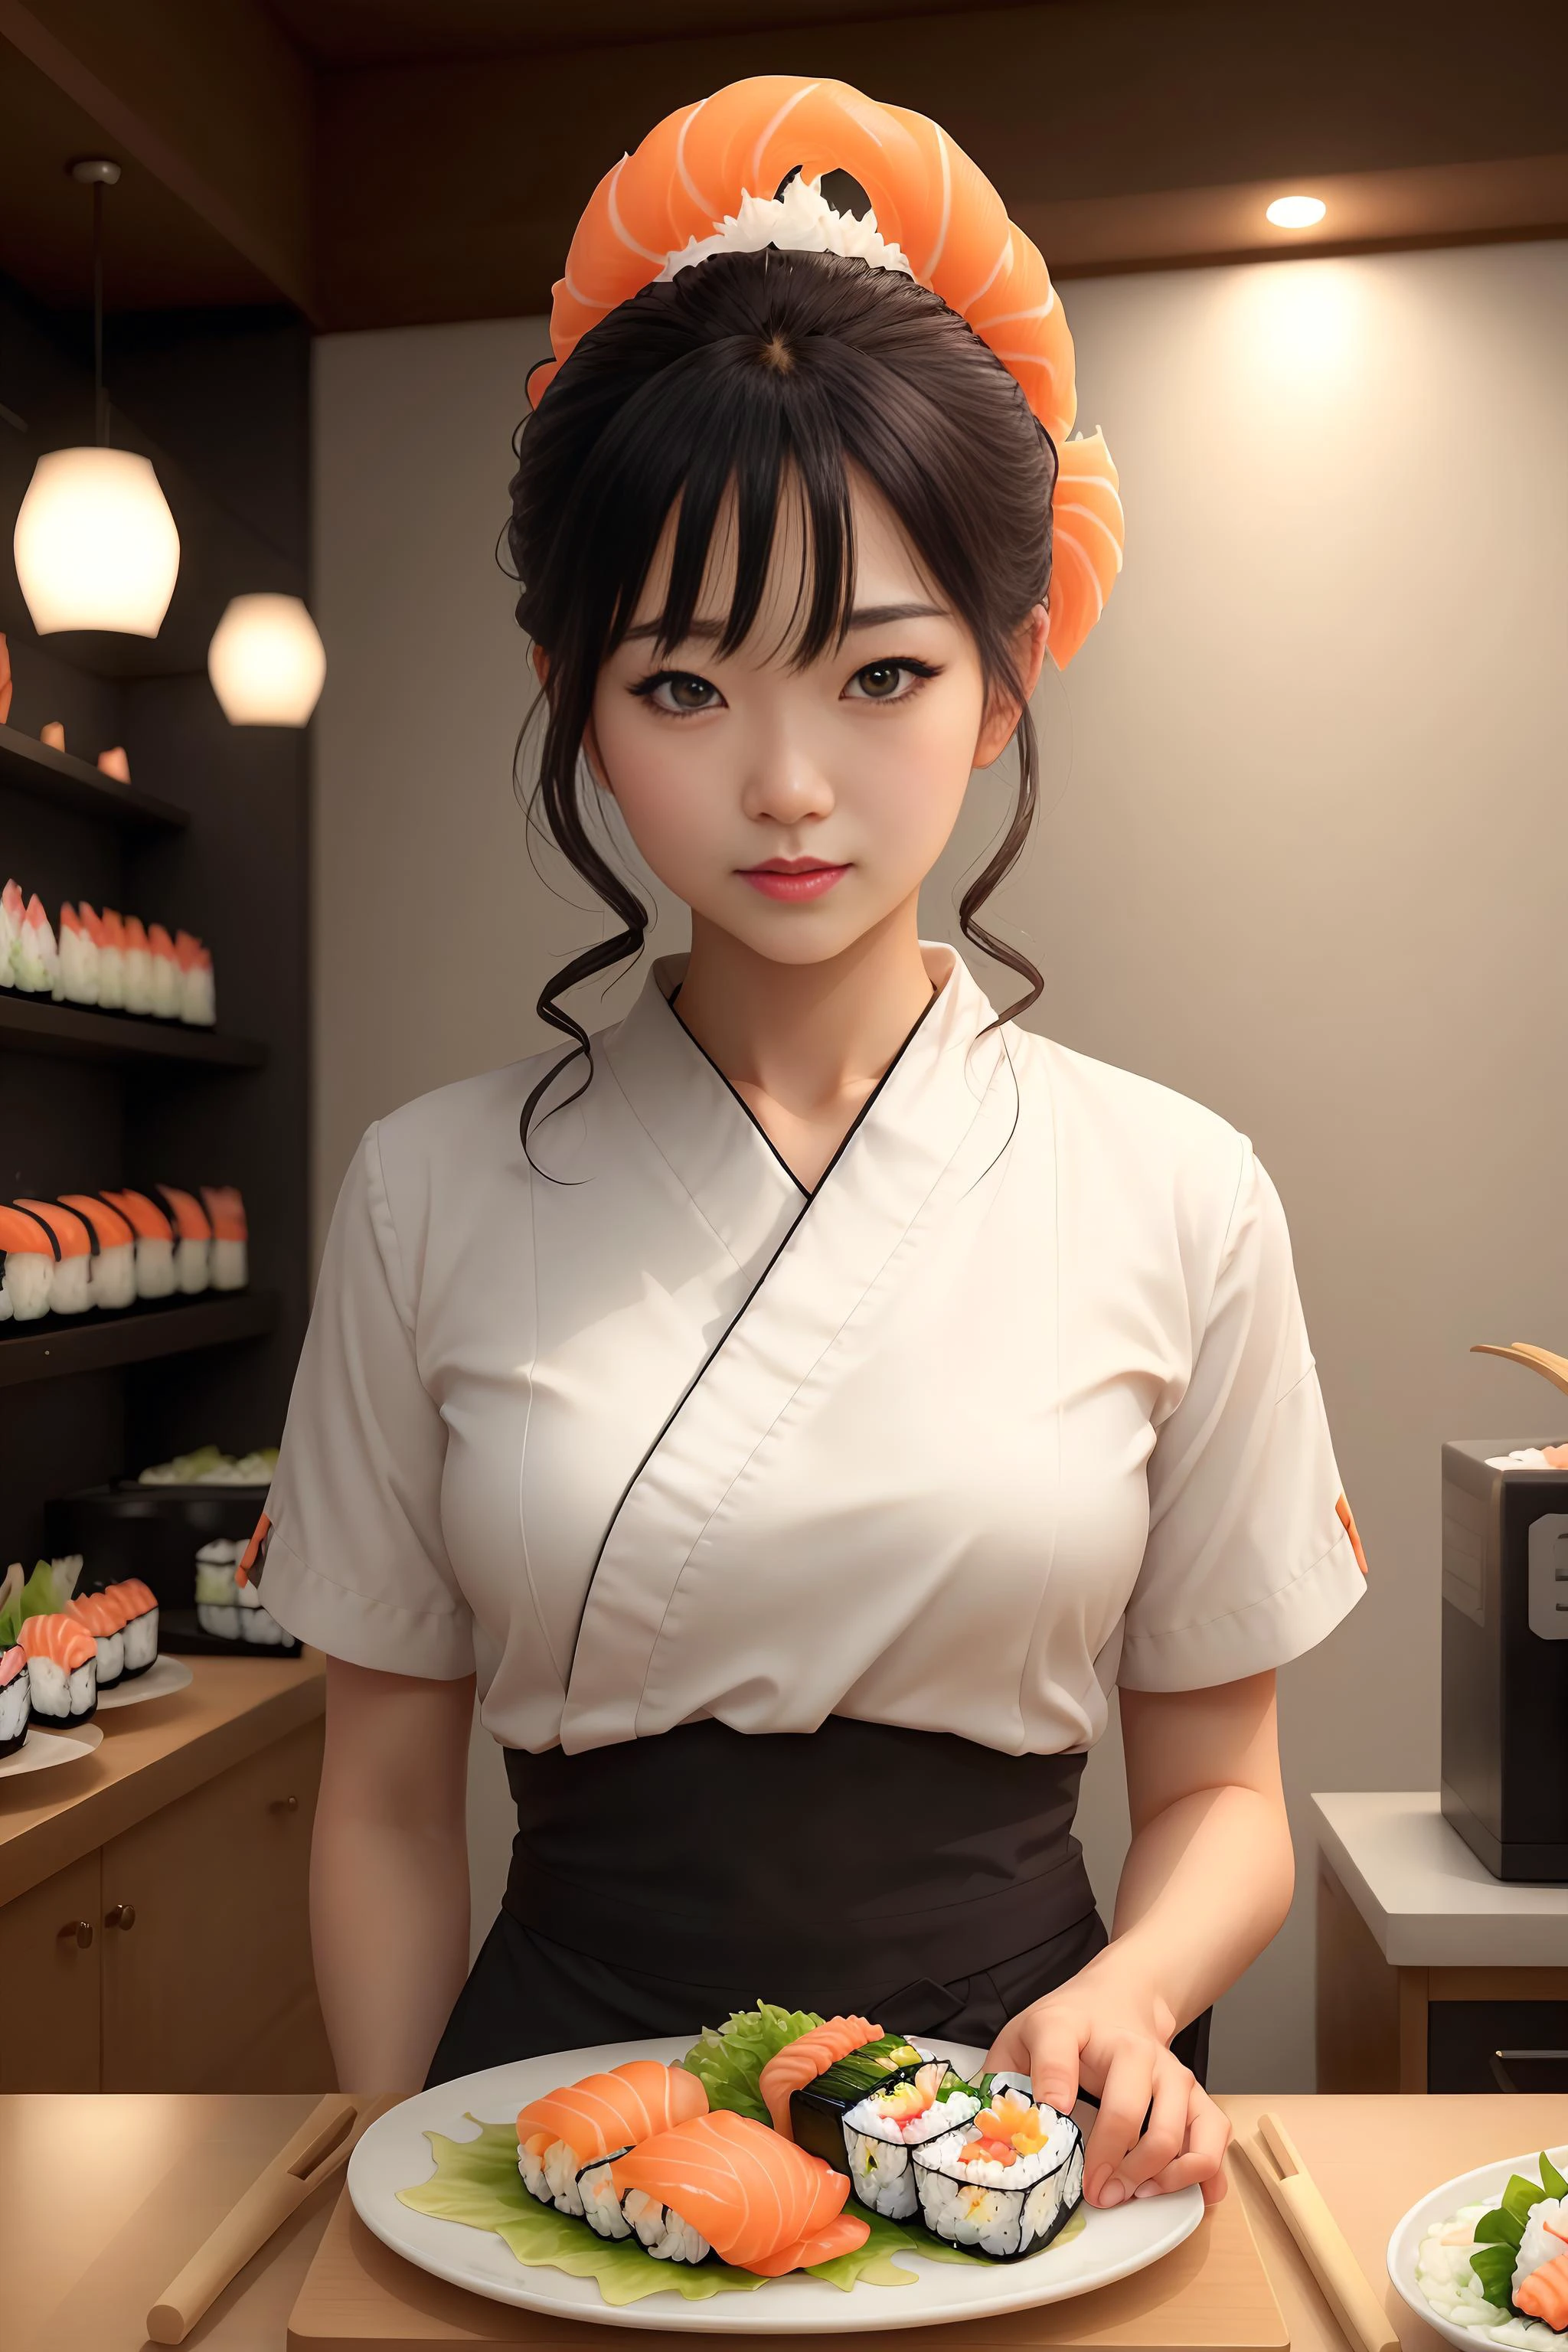 ホイップクリームを持つ寿司スタイルの女性トップスタイル